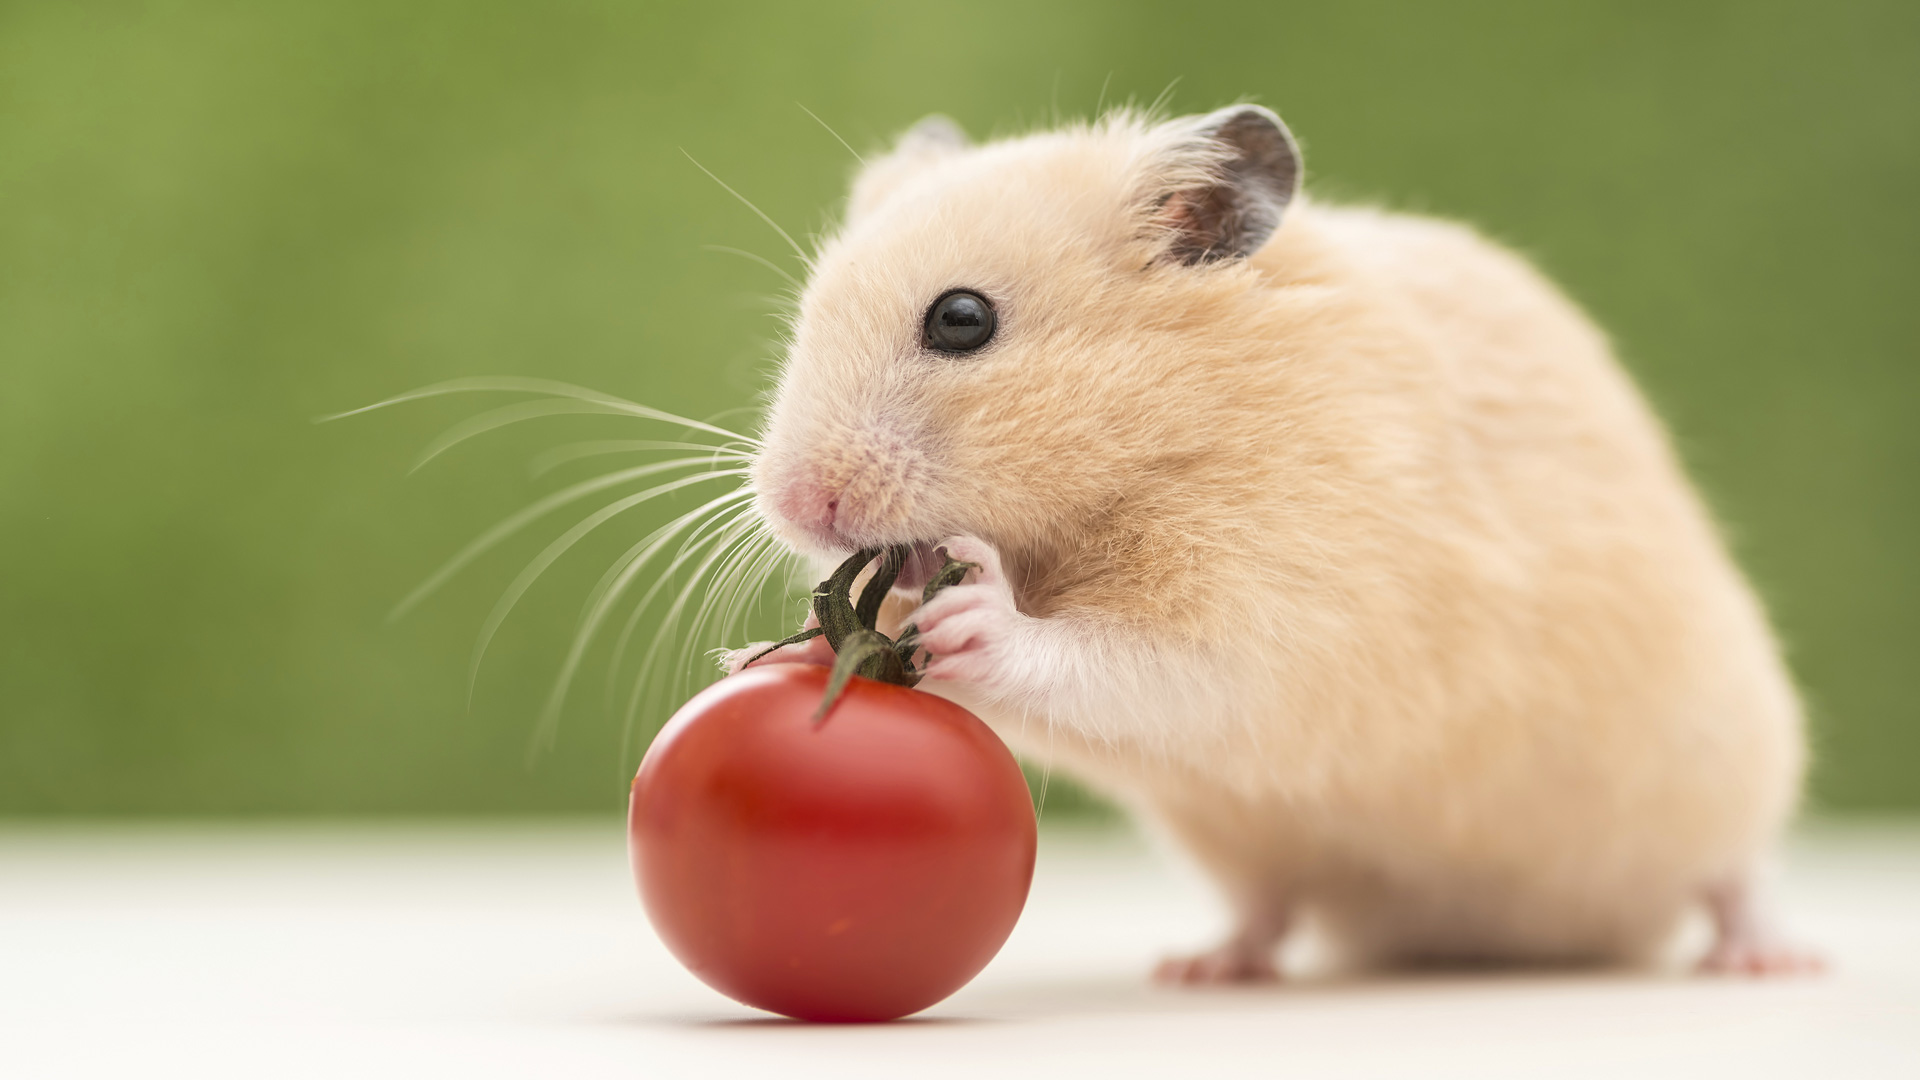 hamster-eating-tomato